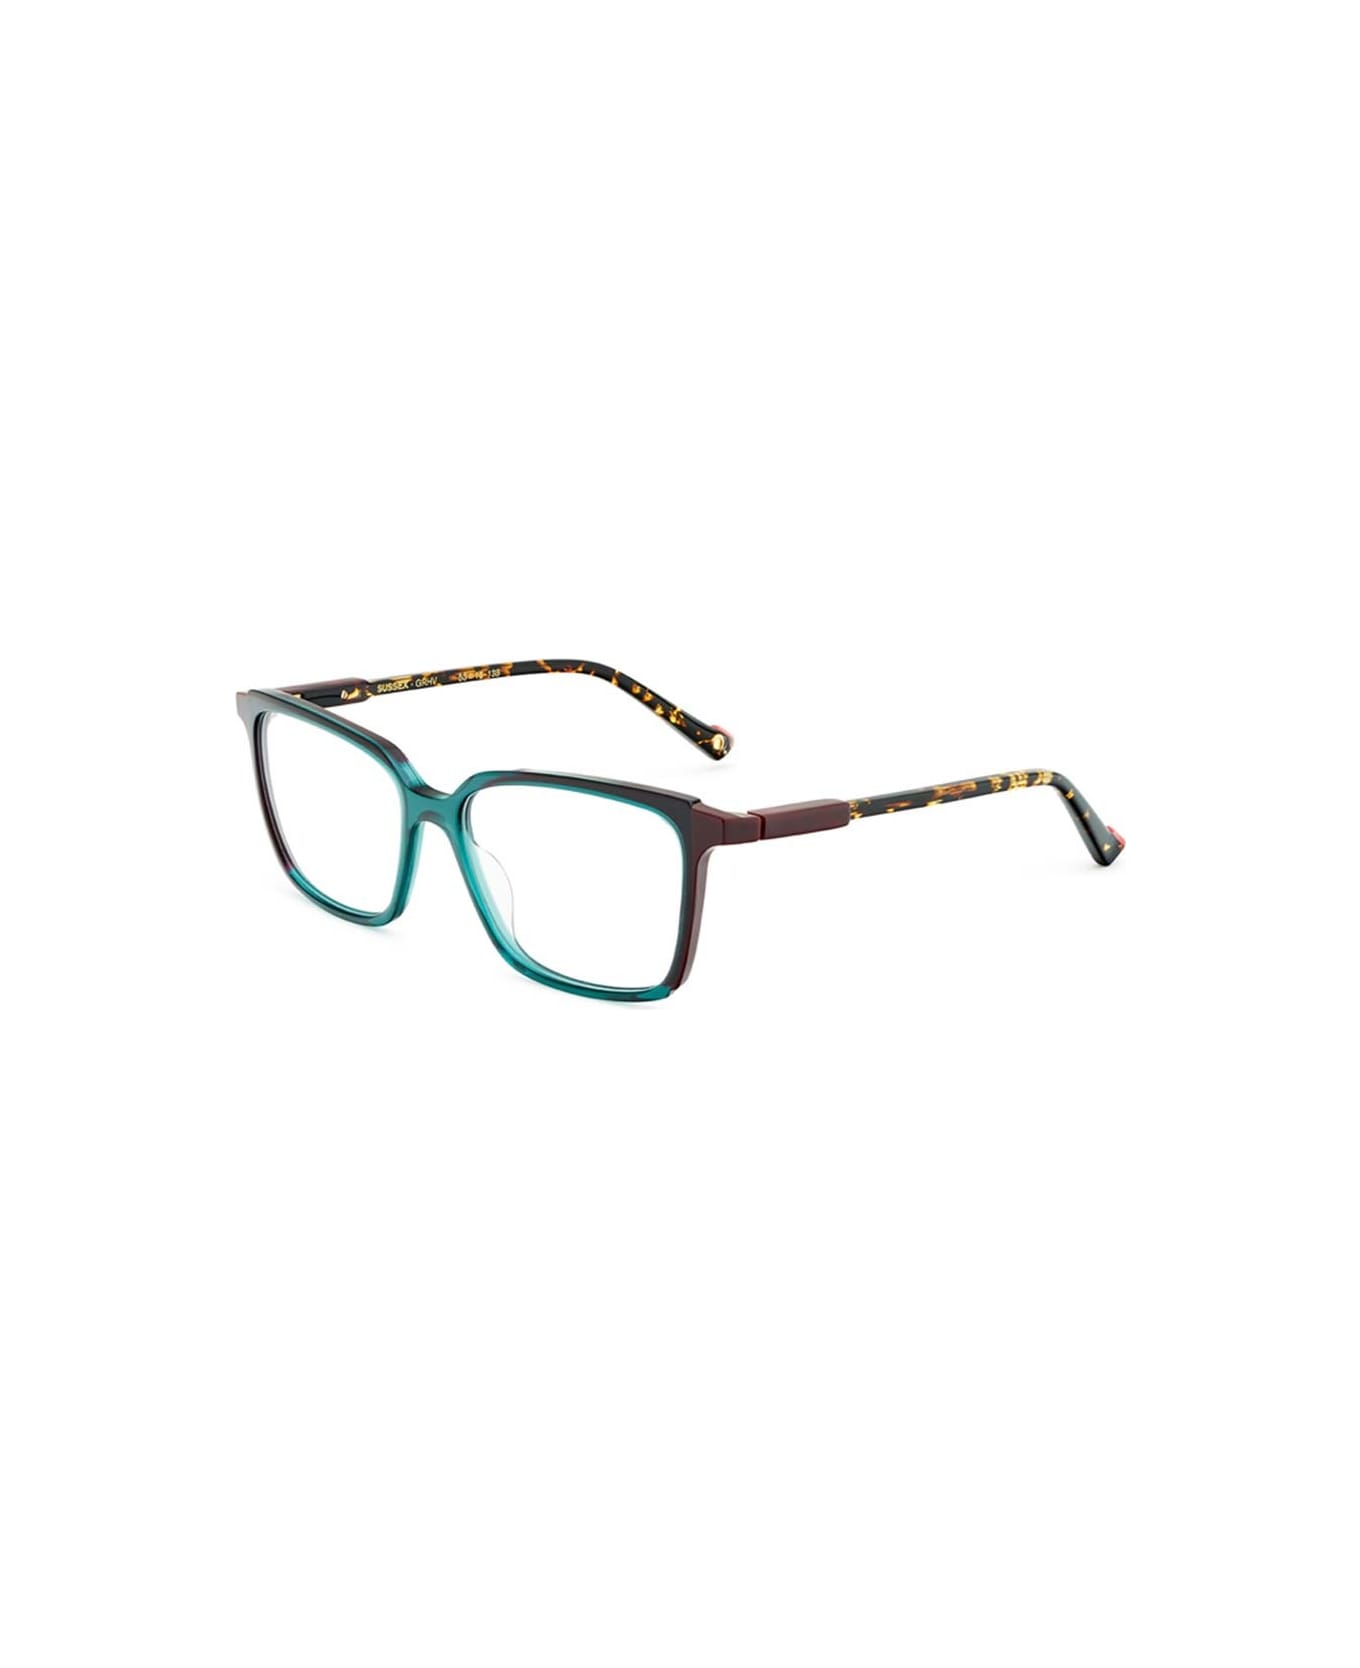 Etnia Barcelona Glasses - Verde アイウェア